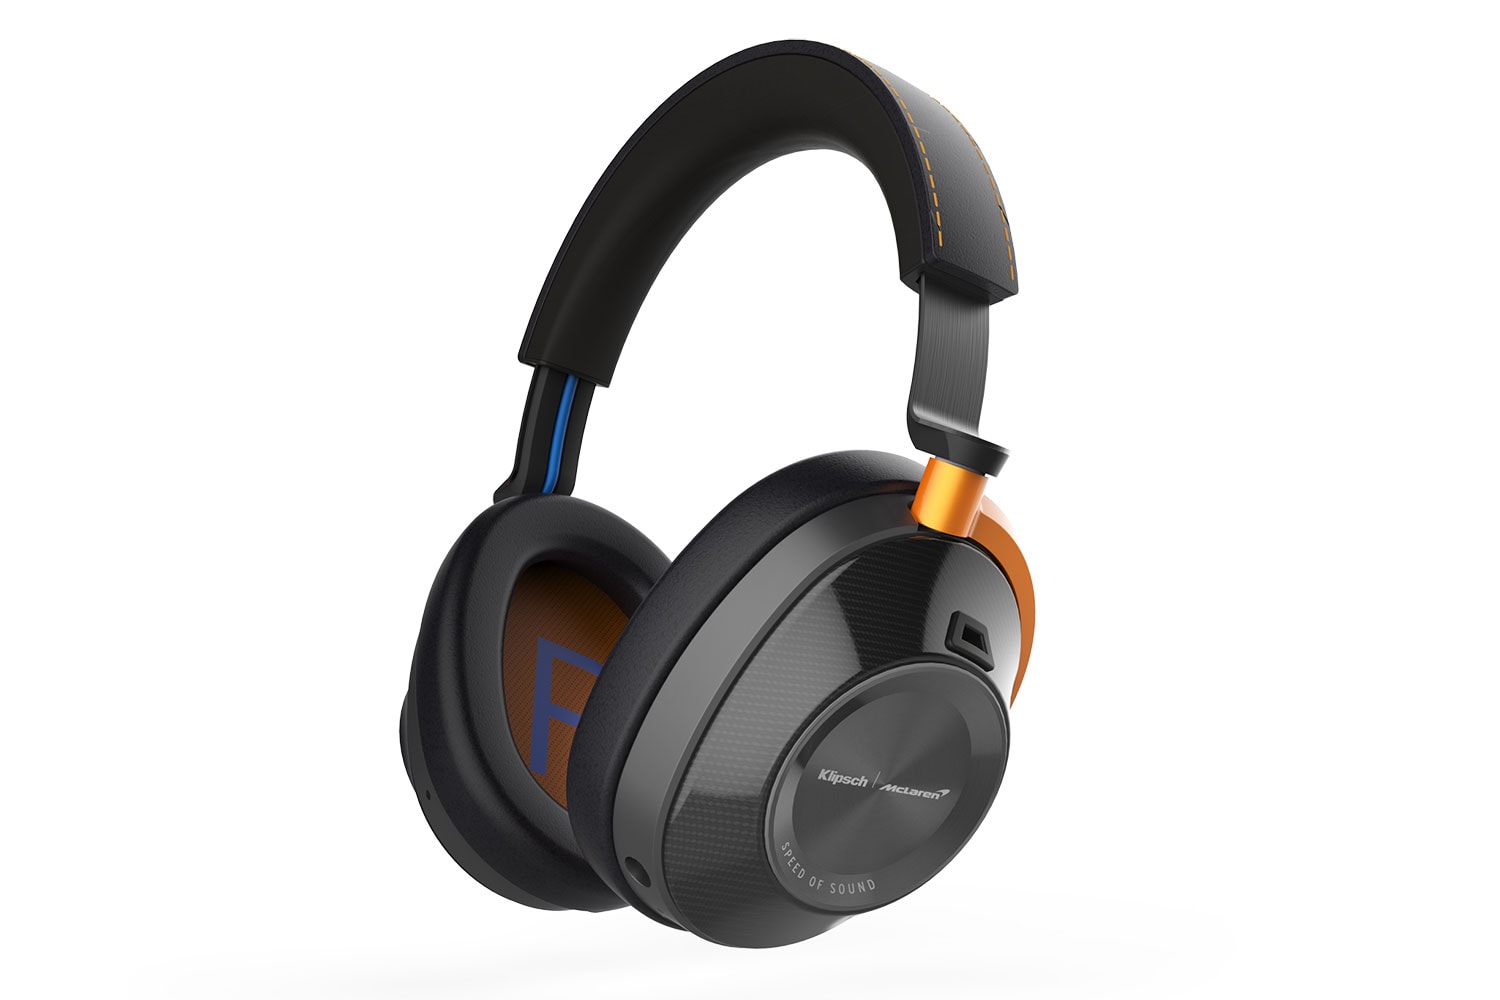 Klipsch Audio x McLaren Racing Headphone Series